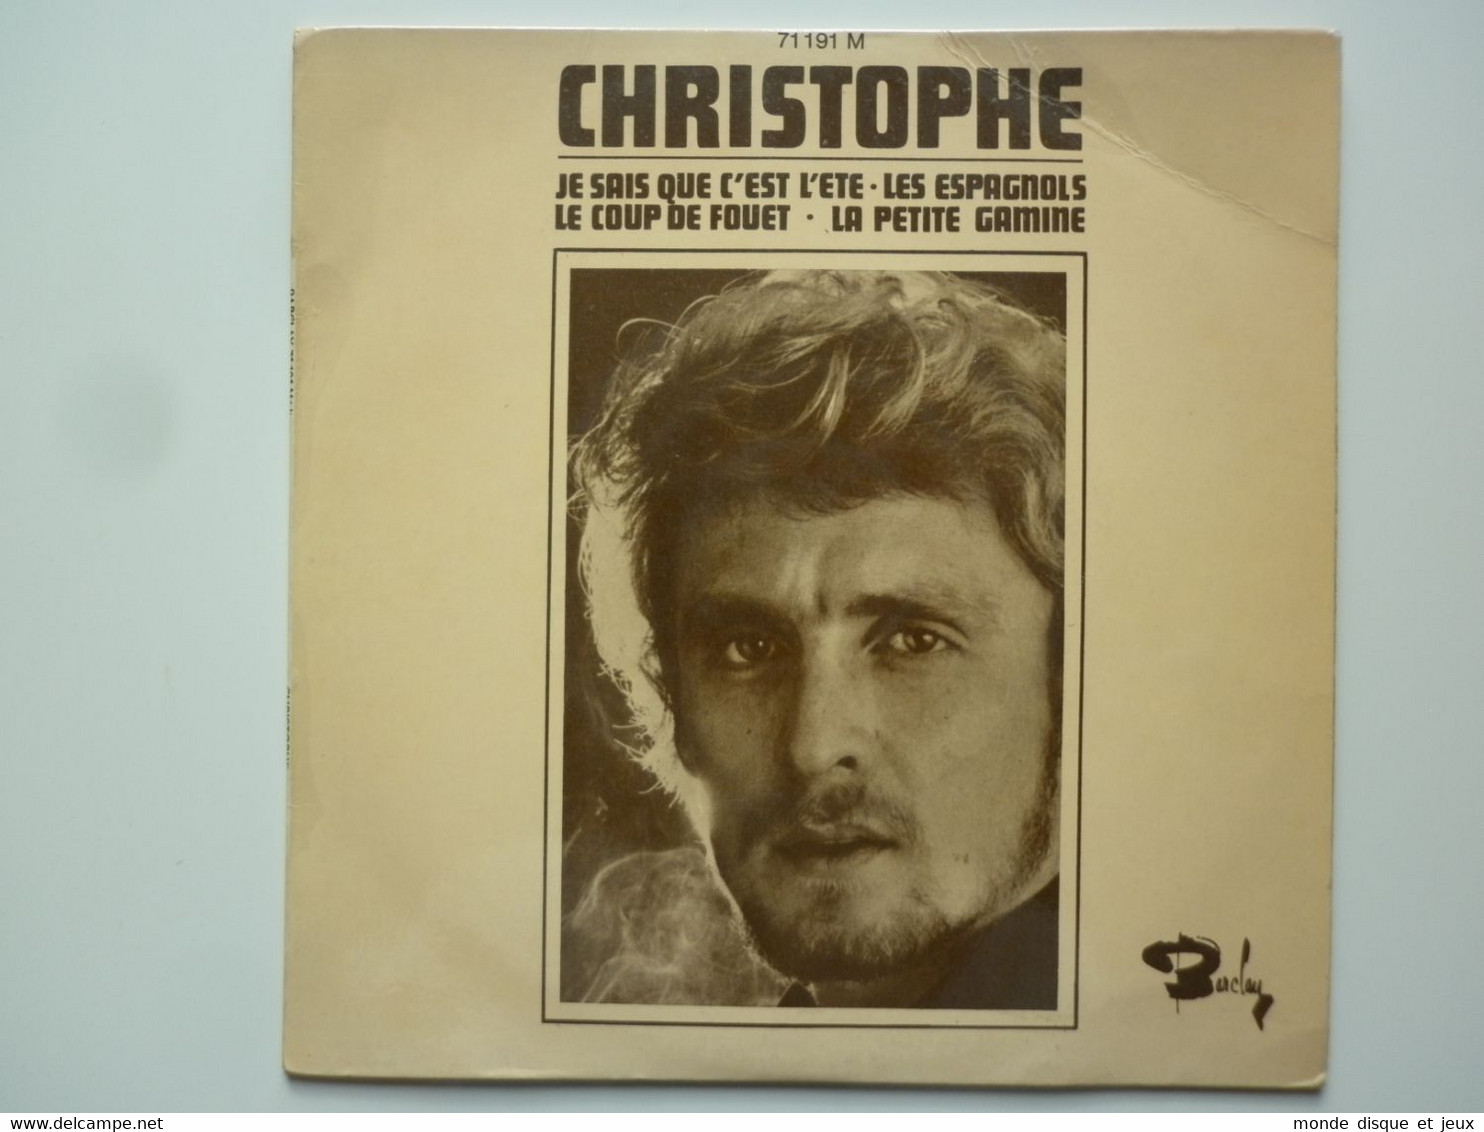 Christophe 45Tours EP Vinyle Je Sais Que C'est L'été - 45 T - Maxi-Single